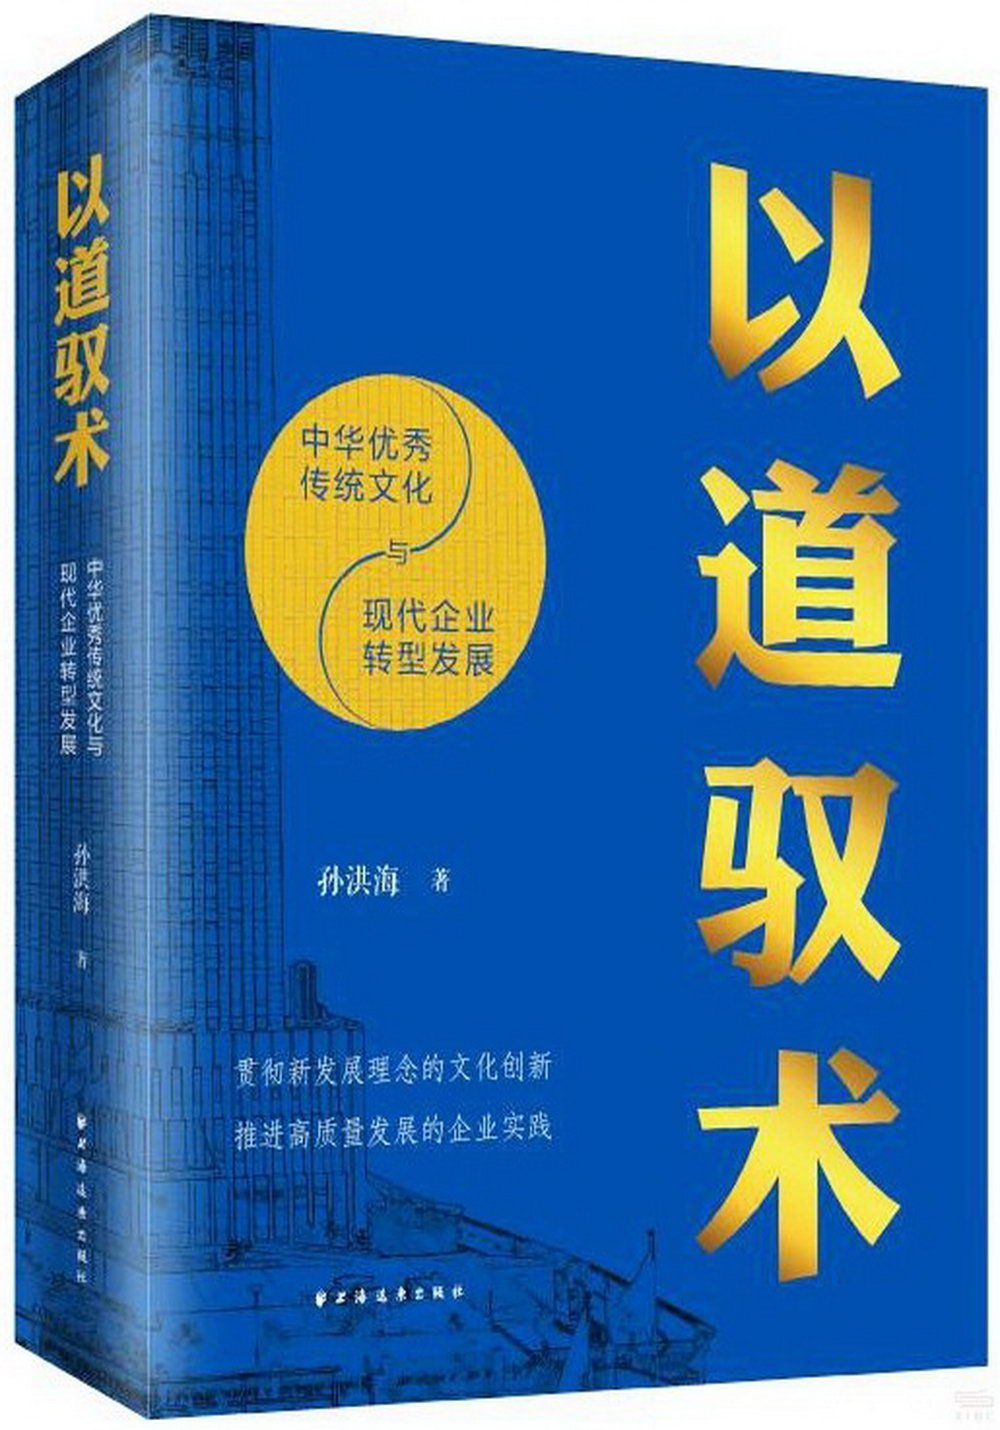 以道馭術：中華優秀傳統文化與現代企業轉型發展